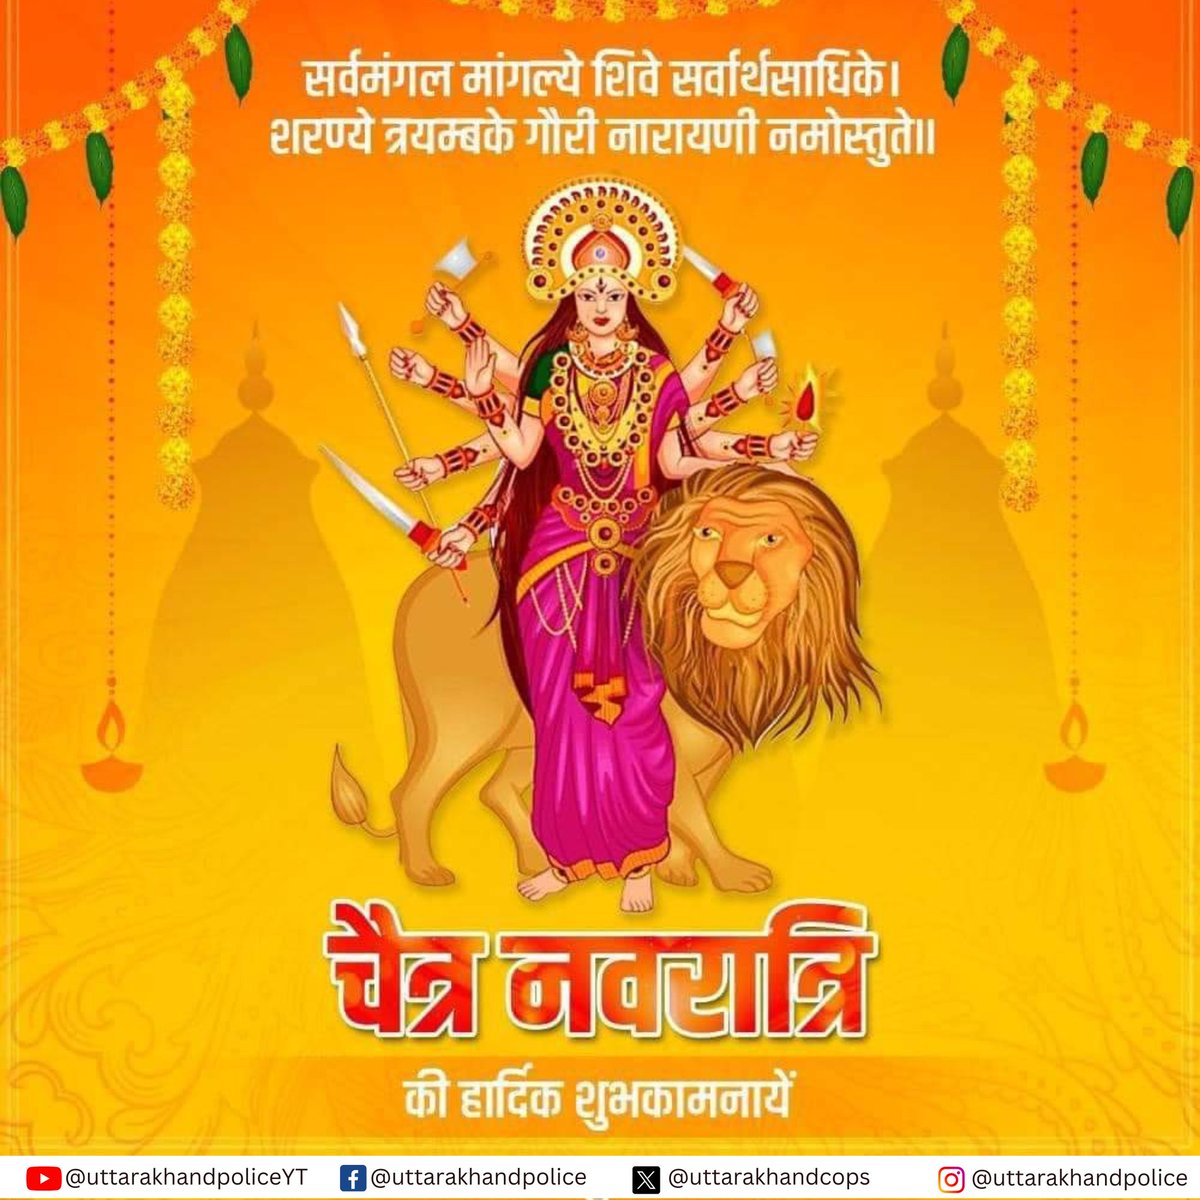 आप सभी को चैत्र नवरात्रि के पावन पर्व एवं हिंदू नववर्ष की हार्दिक शुभकामनाएं! शक्ति उपासना का महापर्व सभी देशवासियों के जीवन में सुख, शांति, आरोग्य एवं समृद्धि का संचार करें। #Navratri